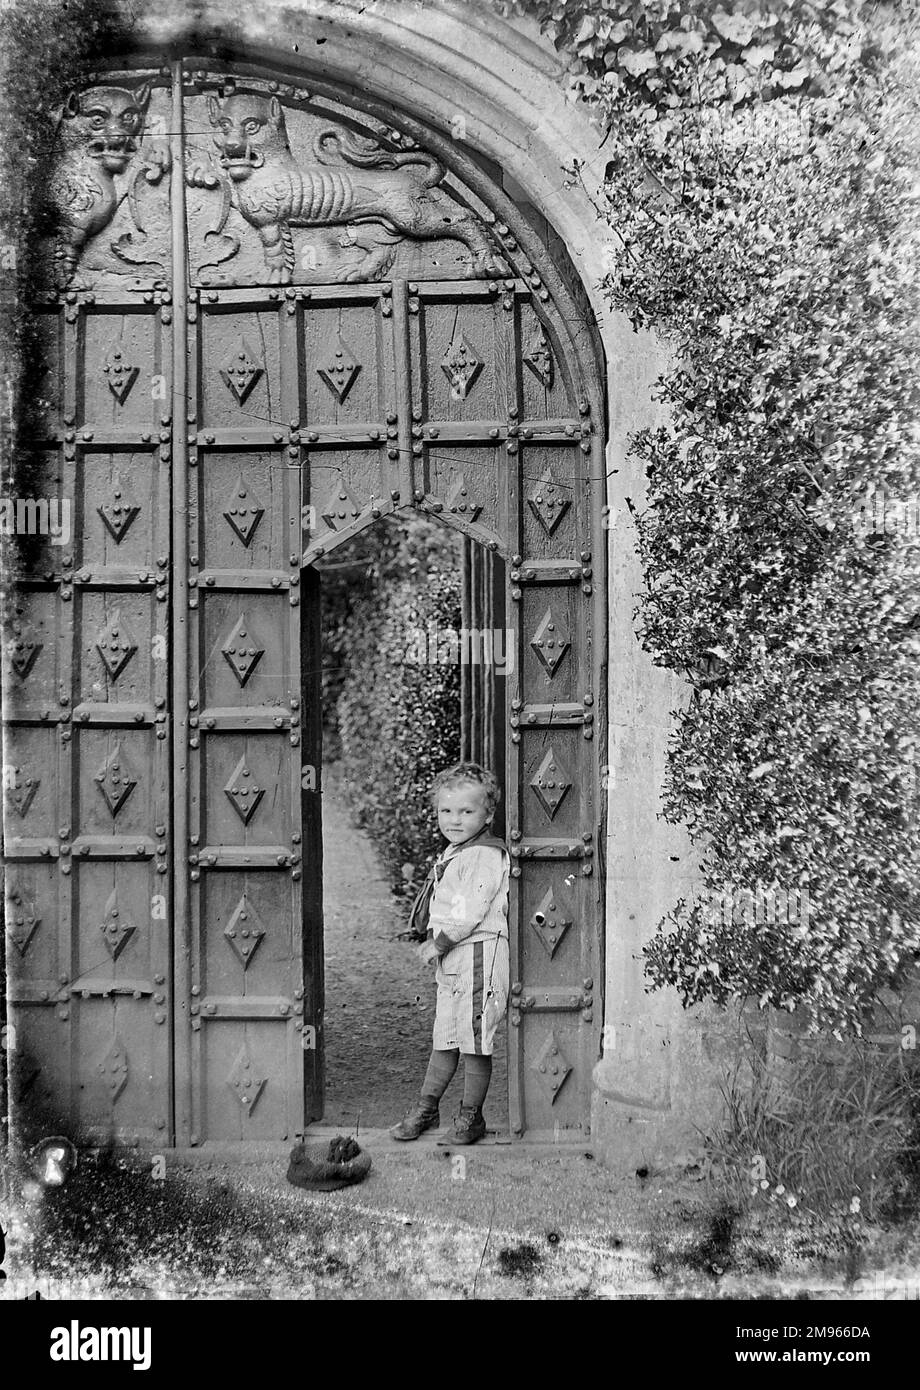 Un petit garçon se penche contre une porte coupée dans un ensemble beaucoup plus grand de portes en bois sculptées de façon impressionnante. Il porte un costume de marin mais a jeté sa casquette (image 2 de 3) Banque D'Images